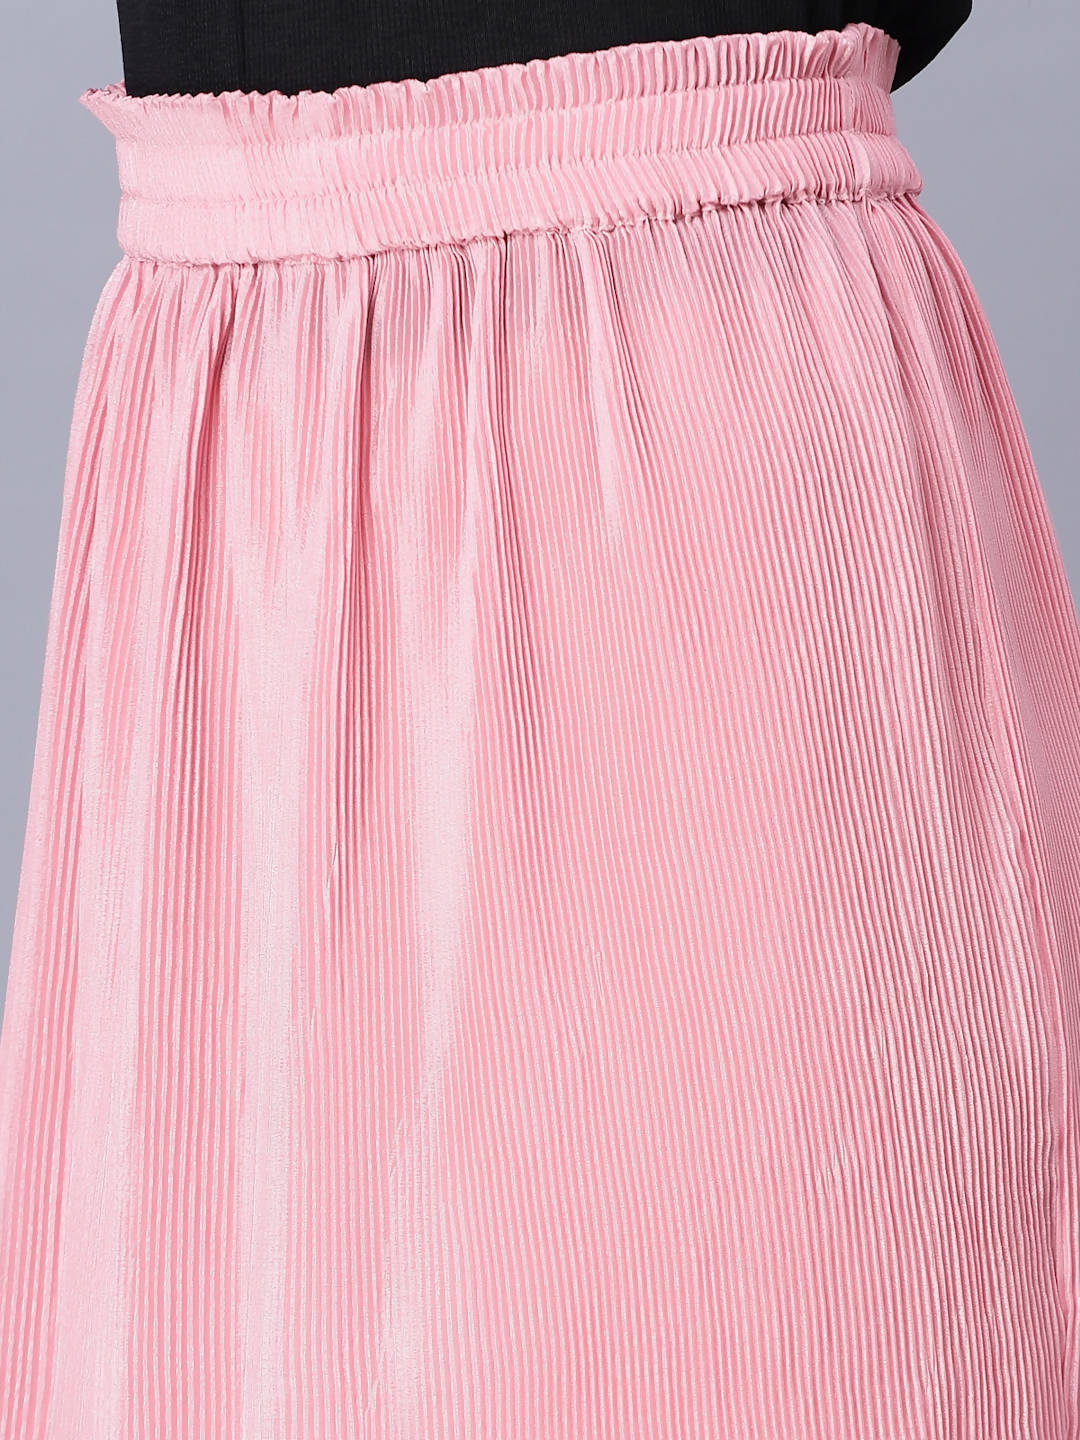 Myshka Chiffon Solid Pink Women Skirt